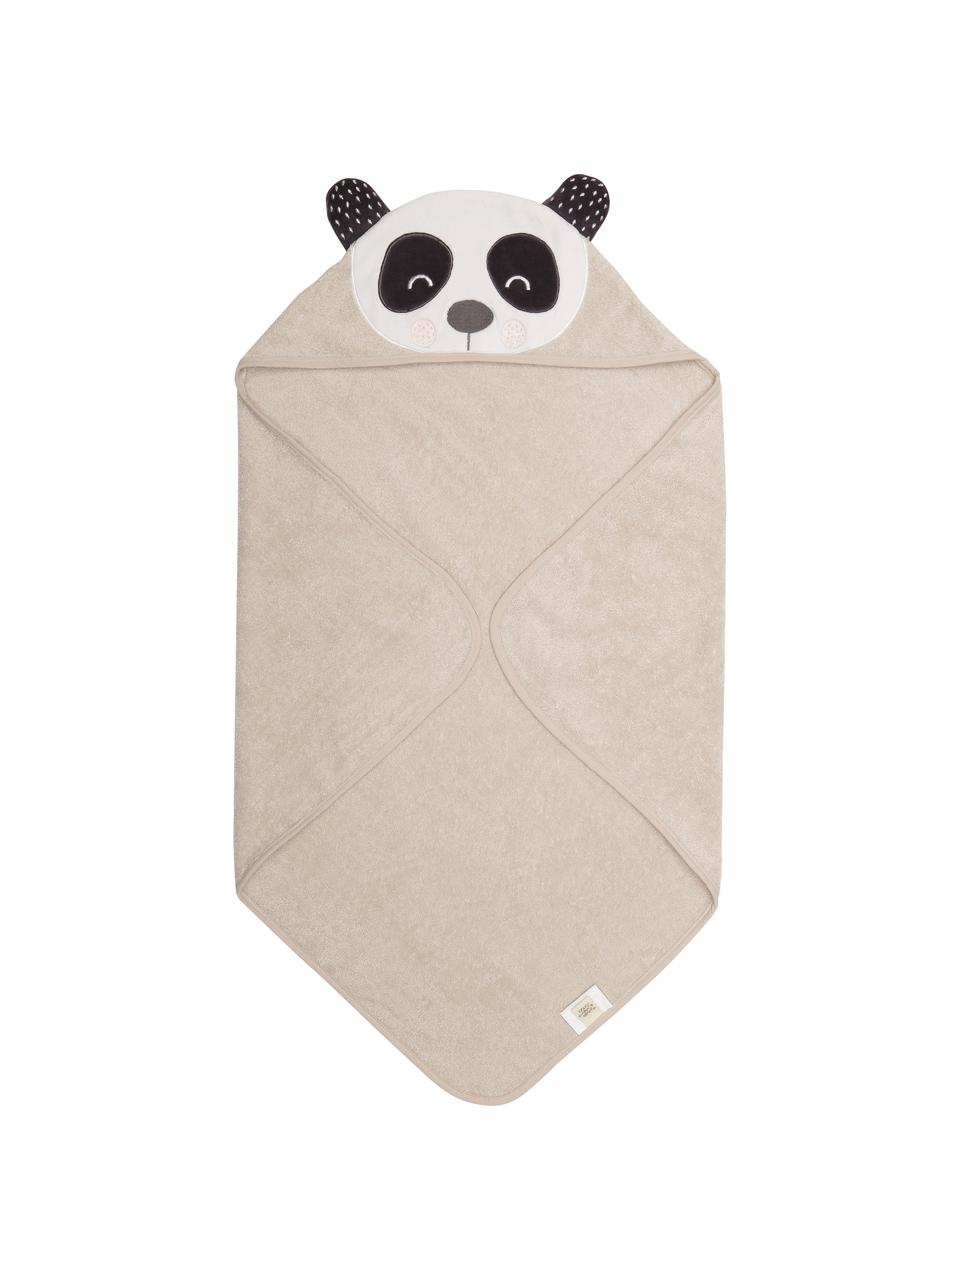 Babyhanddoek Panda Penny van biokatoen, 100% biologisch katoen, GOTS-gecertificeerd, Beige, wit, donkergrijs, B 80 x L 80 cm